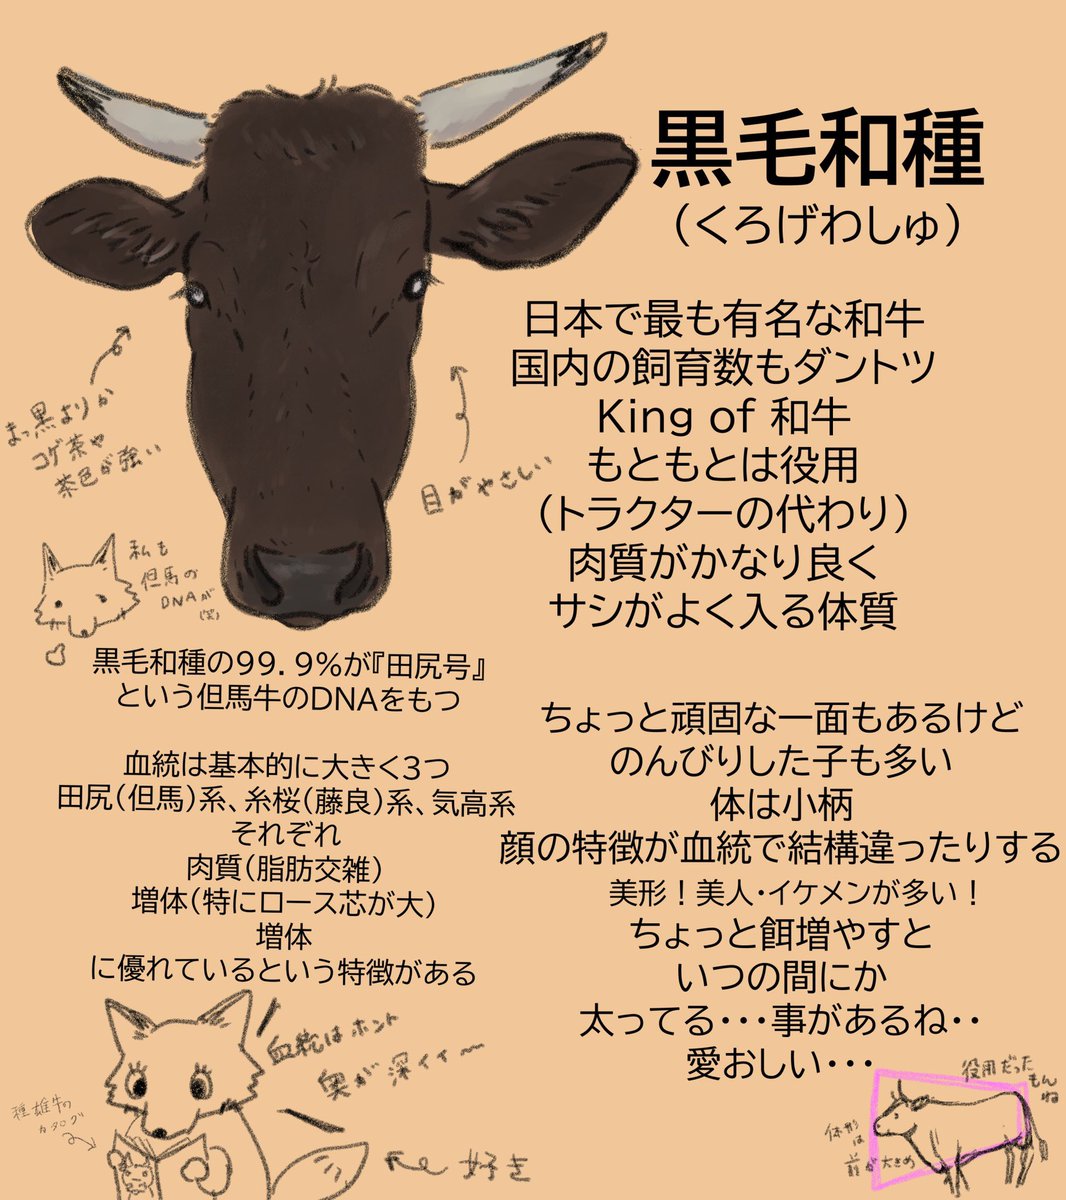 和牛4品種の話🐂

年賀状のイラスト、乳牛だけじゃなくて和牛はどうですか?

日本の宝、和牛って『黒毛和牛』だけじゃ無いって知って欲しいな✨

和牛には色んな魅力詰まってます
#牛 #牛イラスト #和牛 